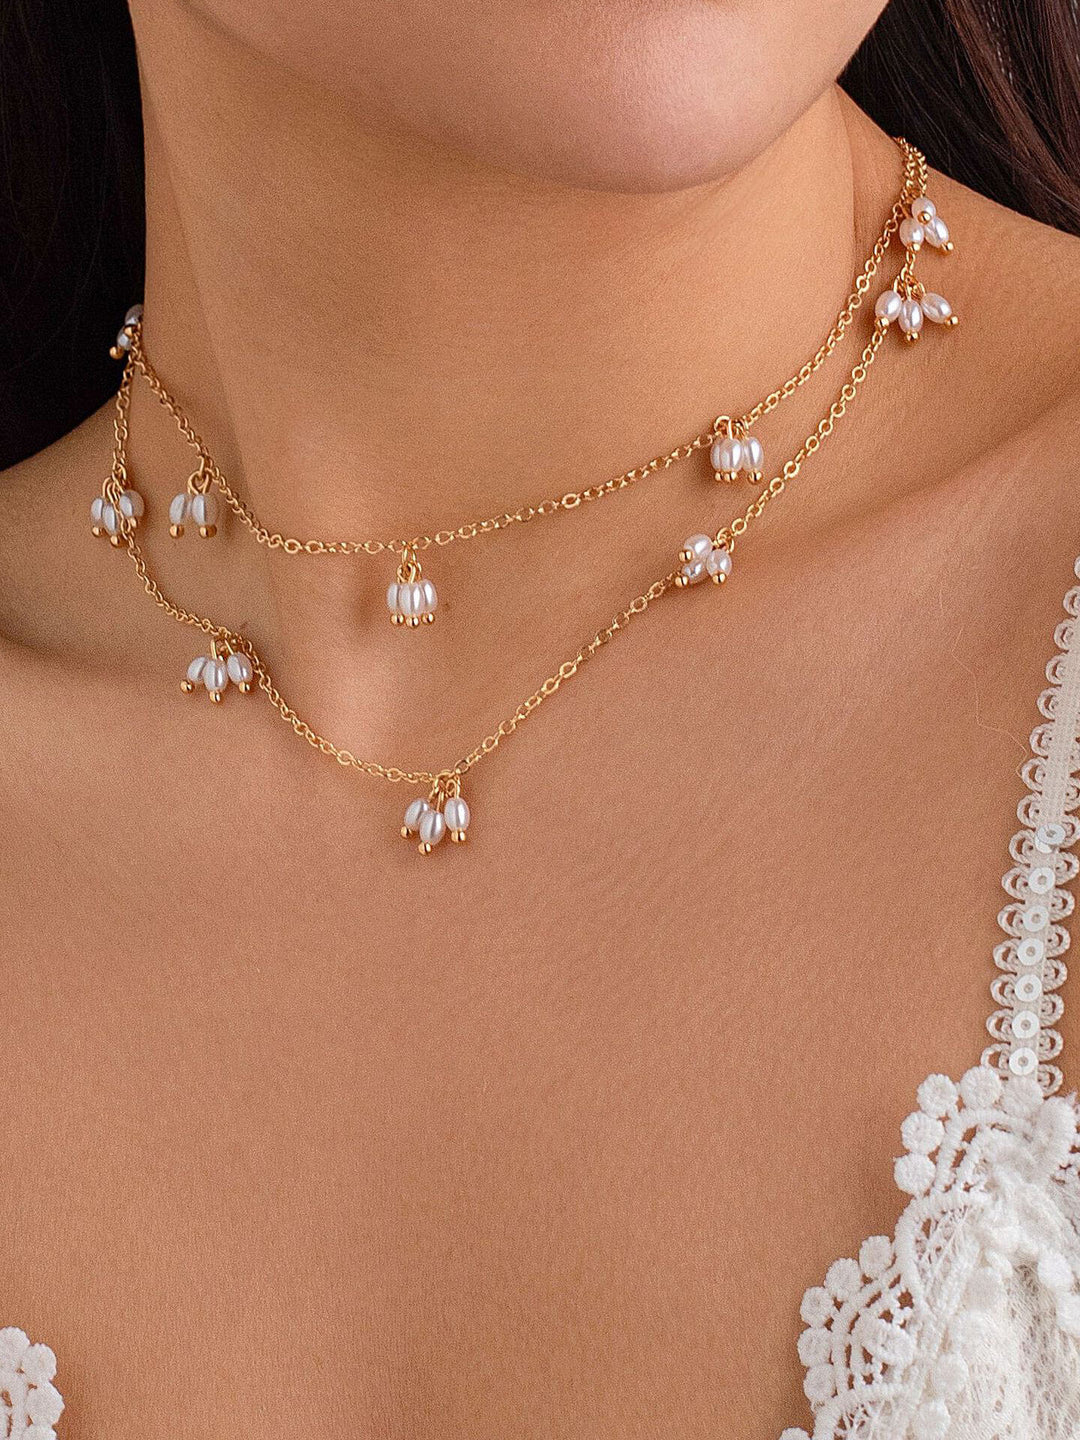 Jednoduchý řetízkový náhrdelník s rýžovými perlami